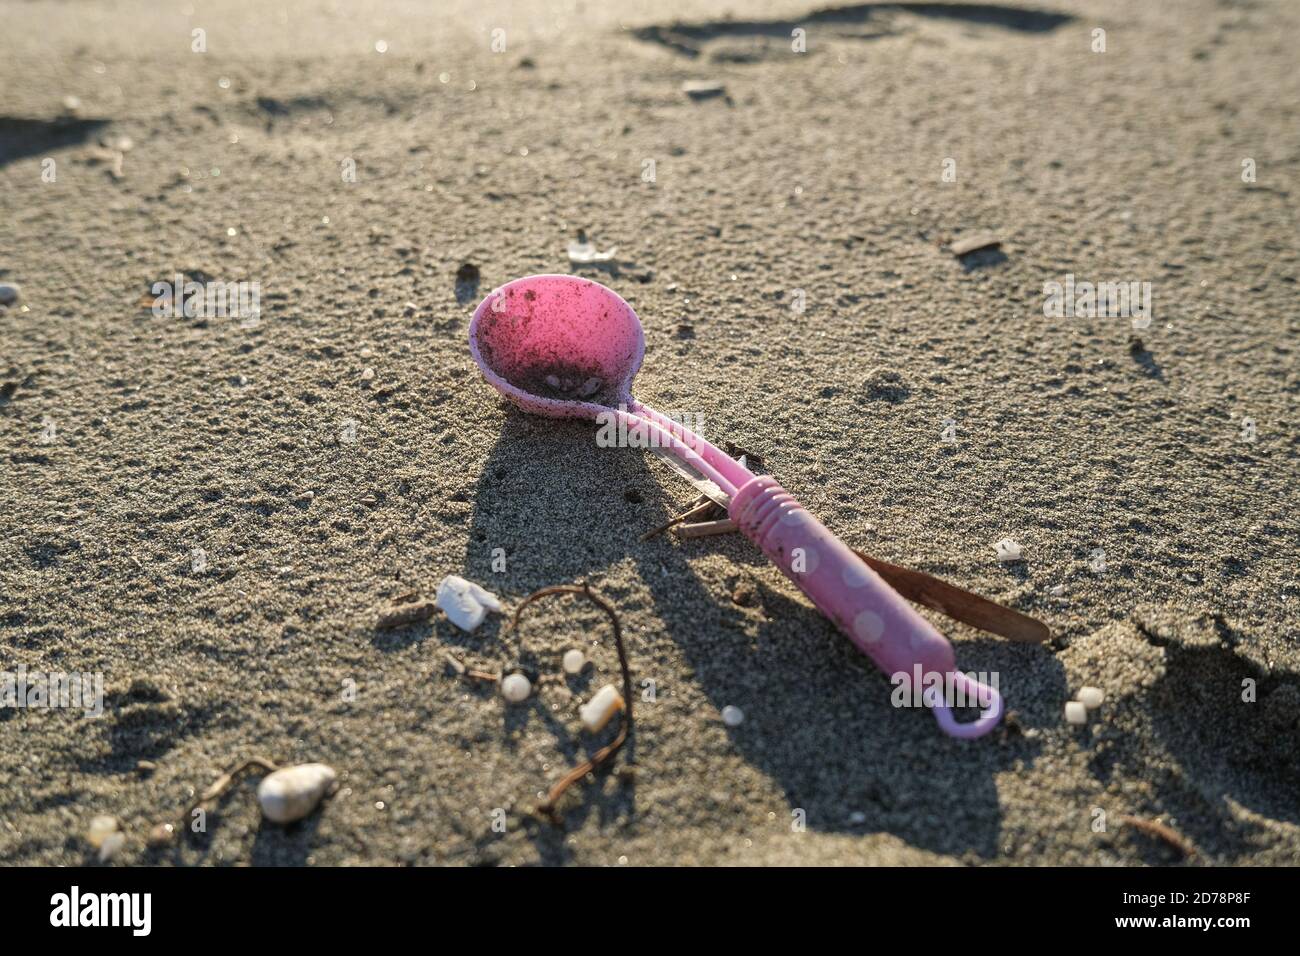 Cuchara de plástico niños juguete descartado en el sucio ecosistema marino contaminado, planeta daños por contaminación Foto de stock